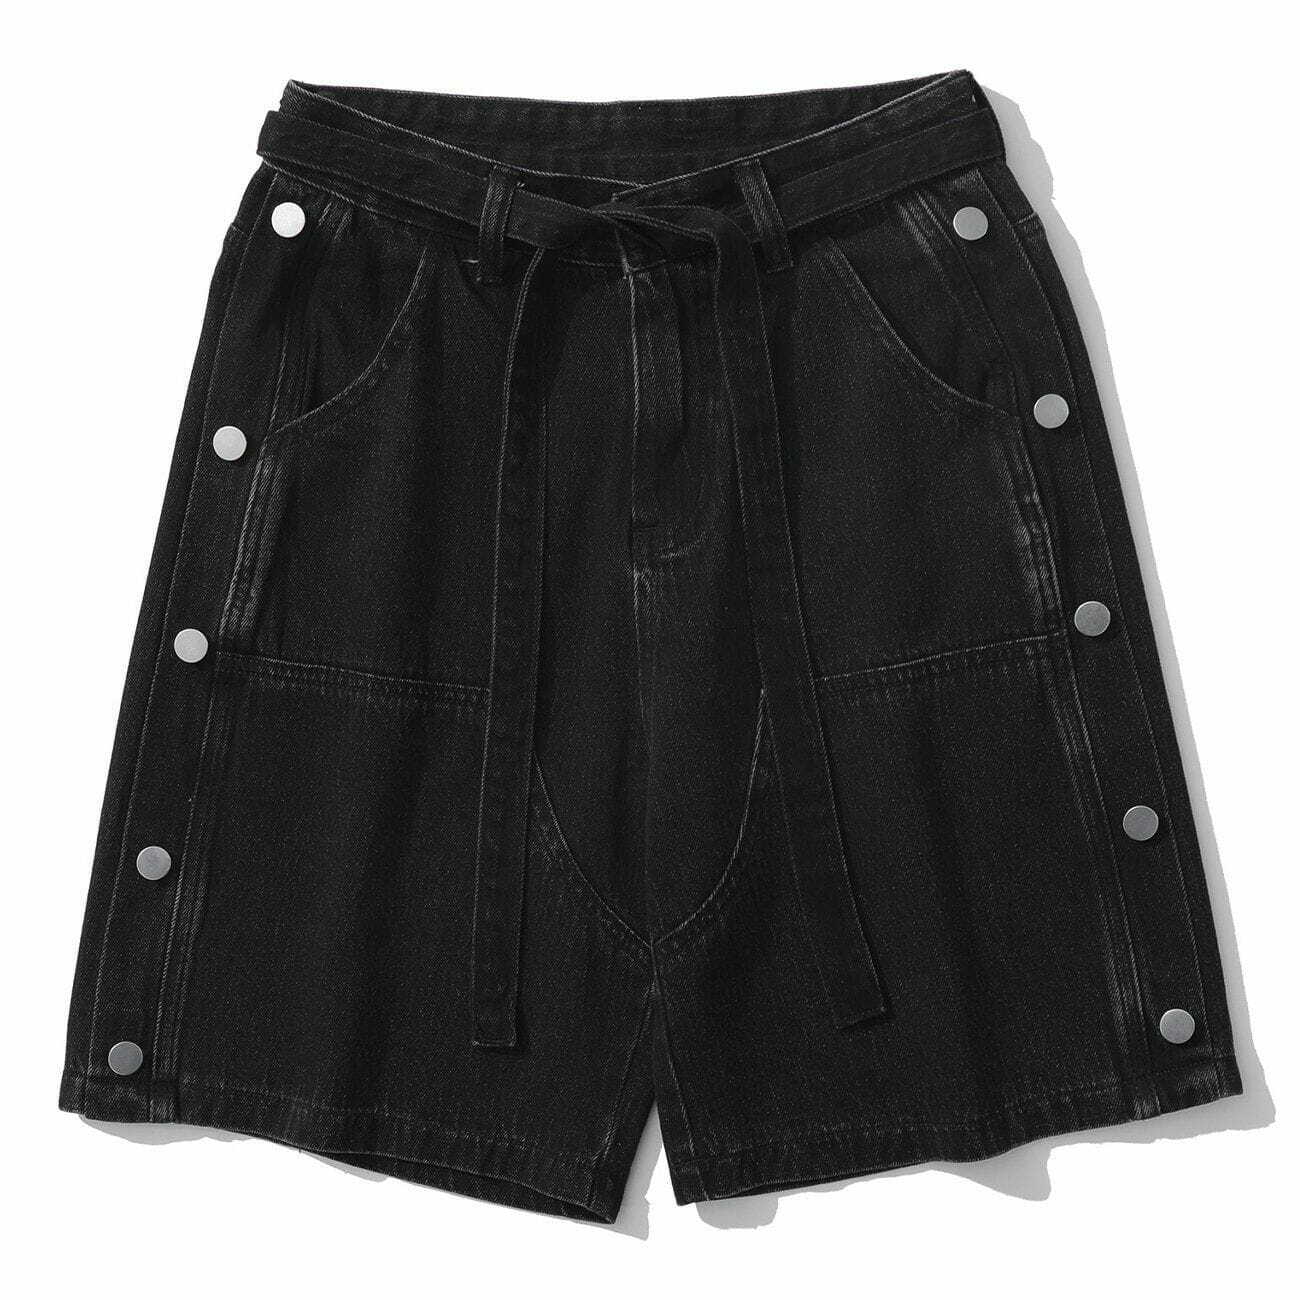 denim side button shorts edgy streetwear essential 5579